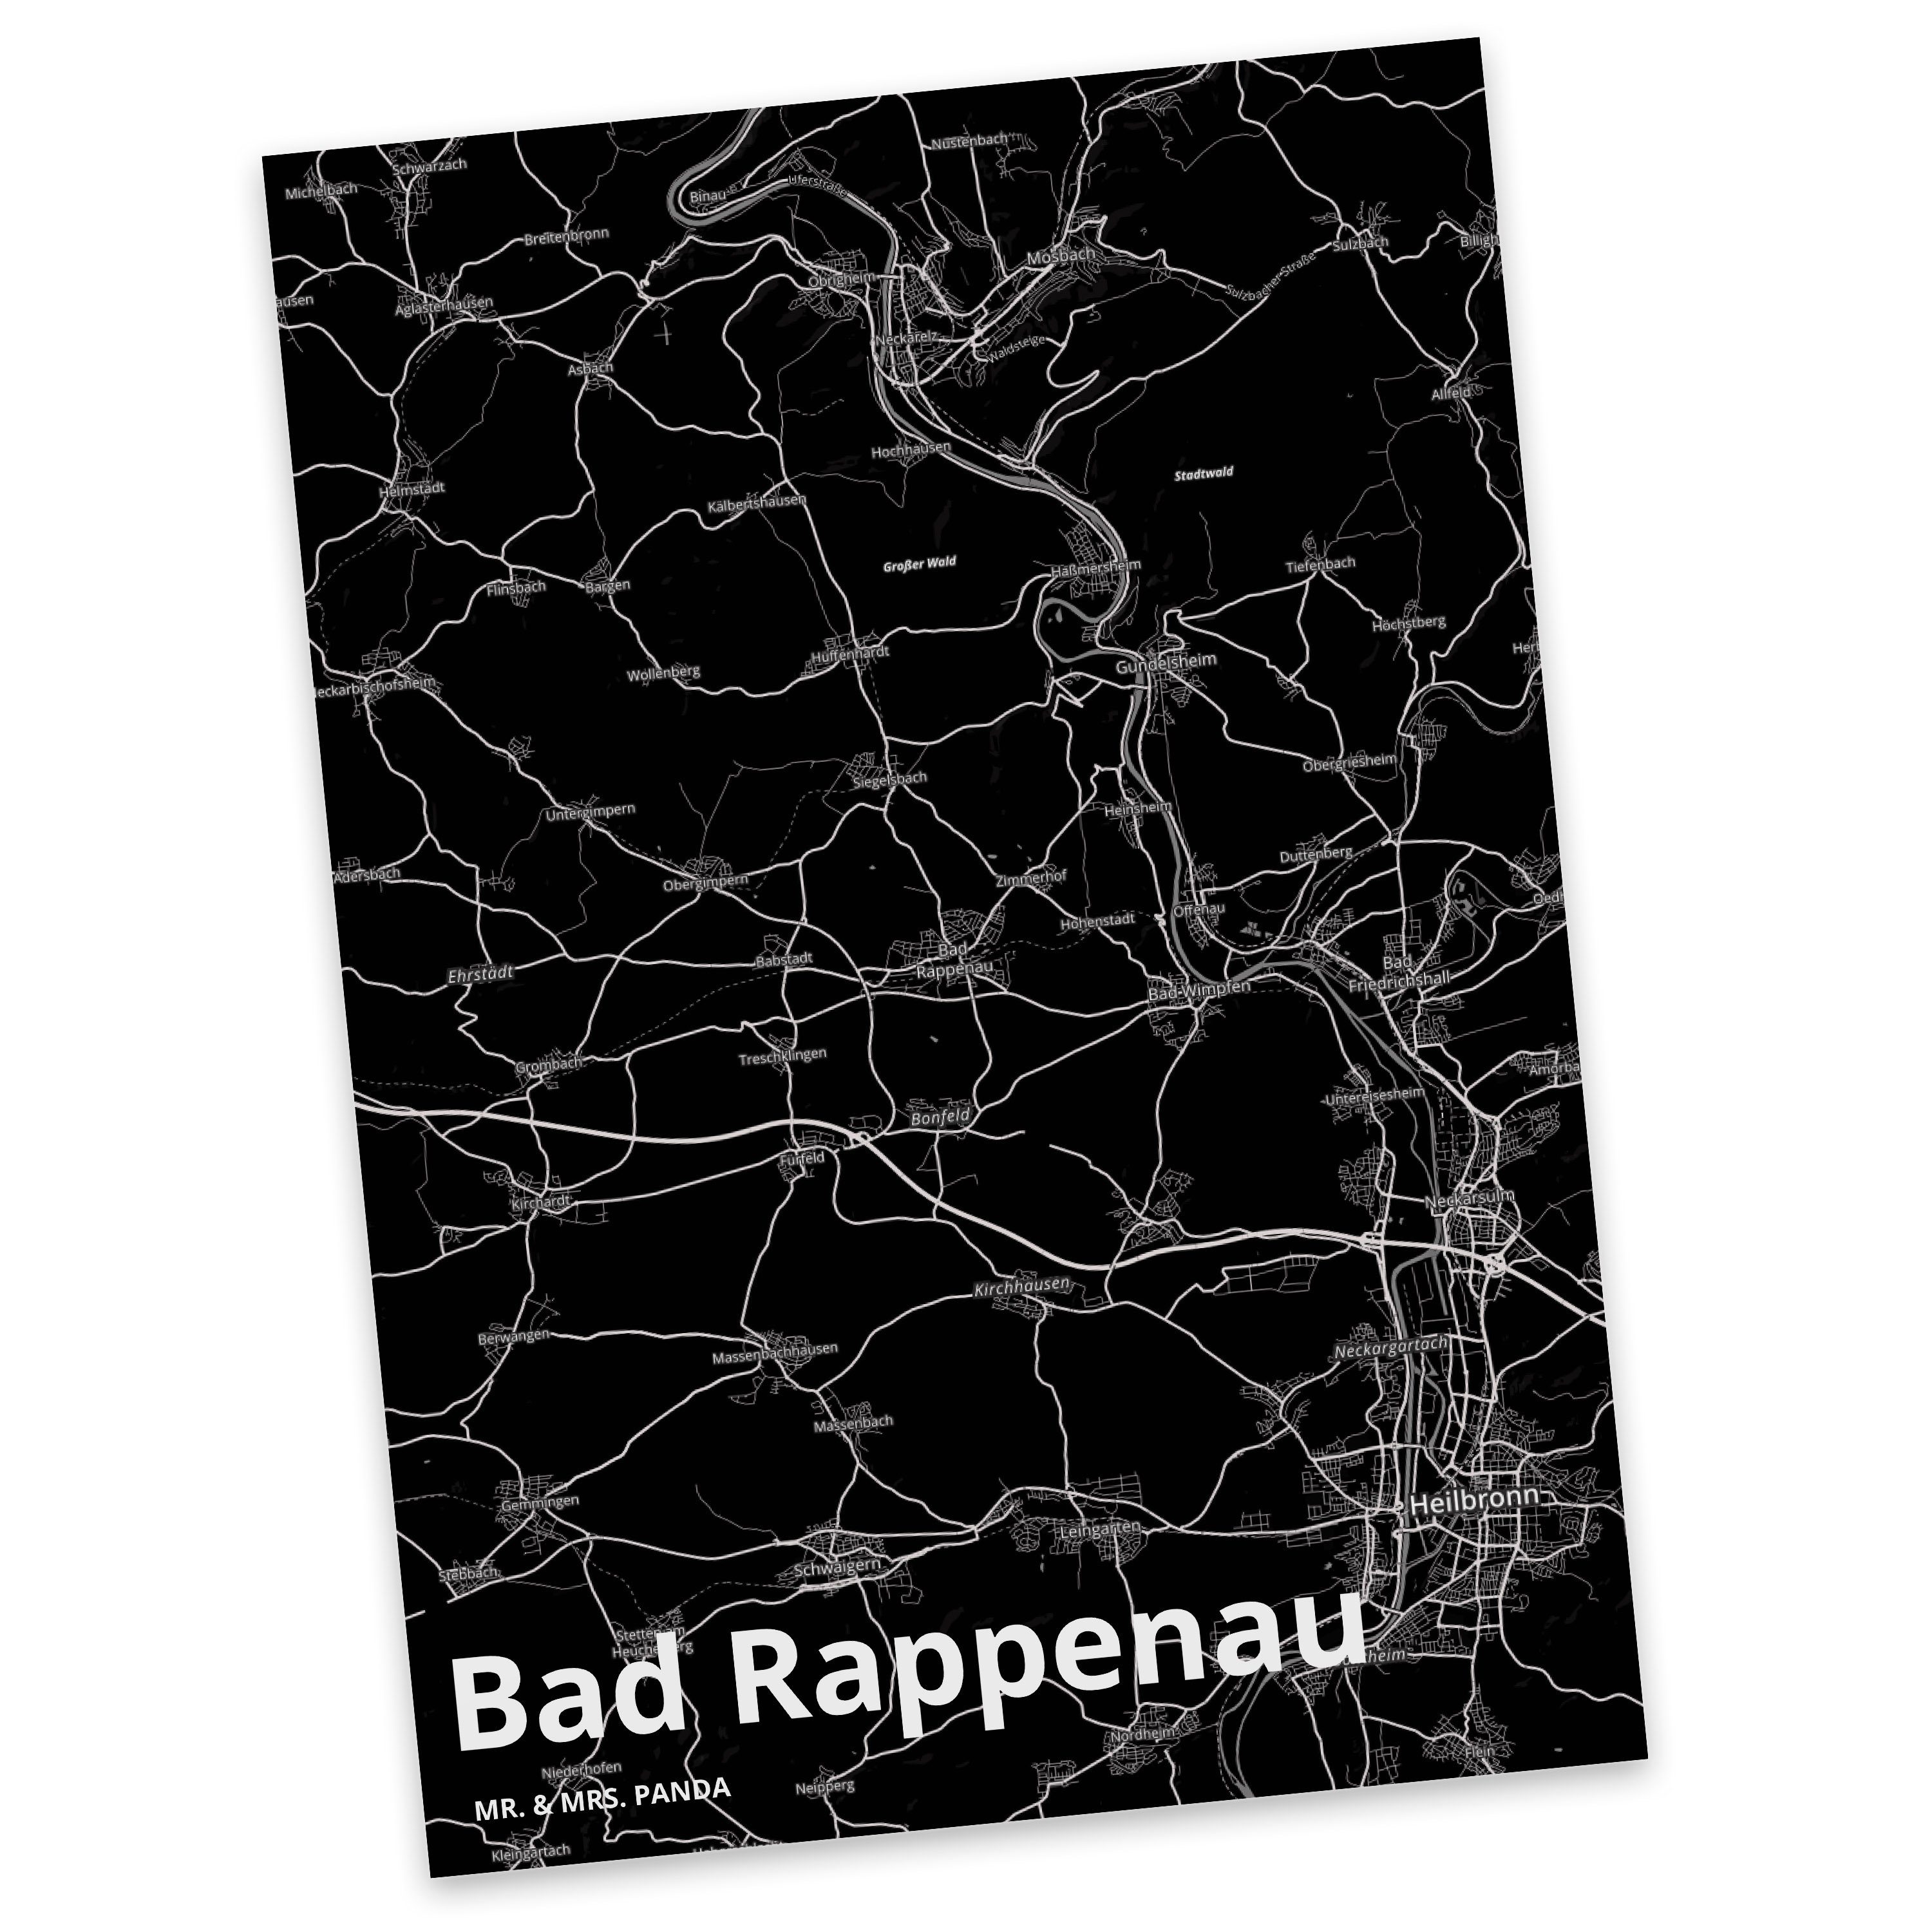 Mr. & Mrs. Panda Postkarte Bad Rappenau - Geschenk, Ort, Stadt Dorf Karte Landkarte Map Stadtpla